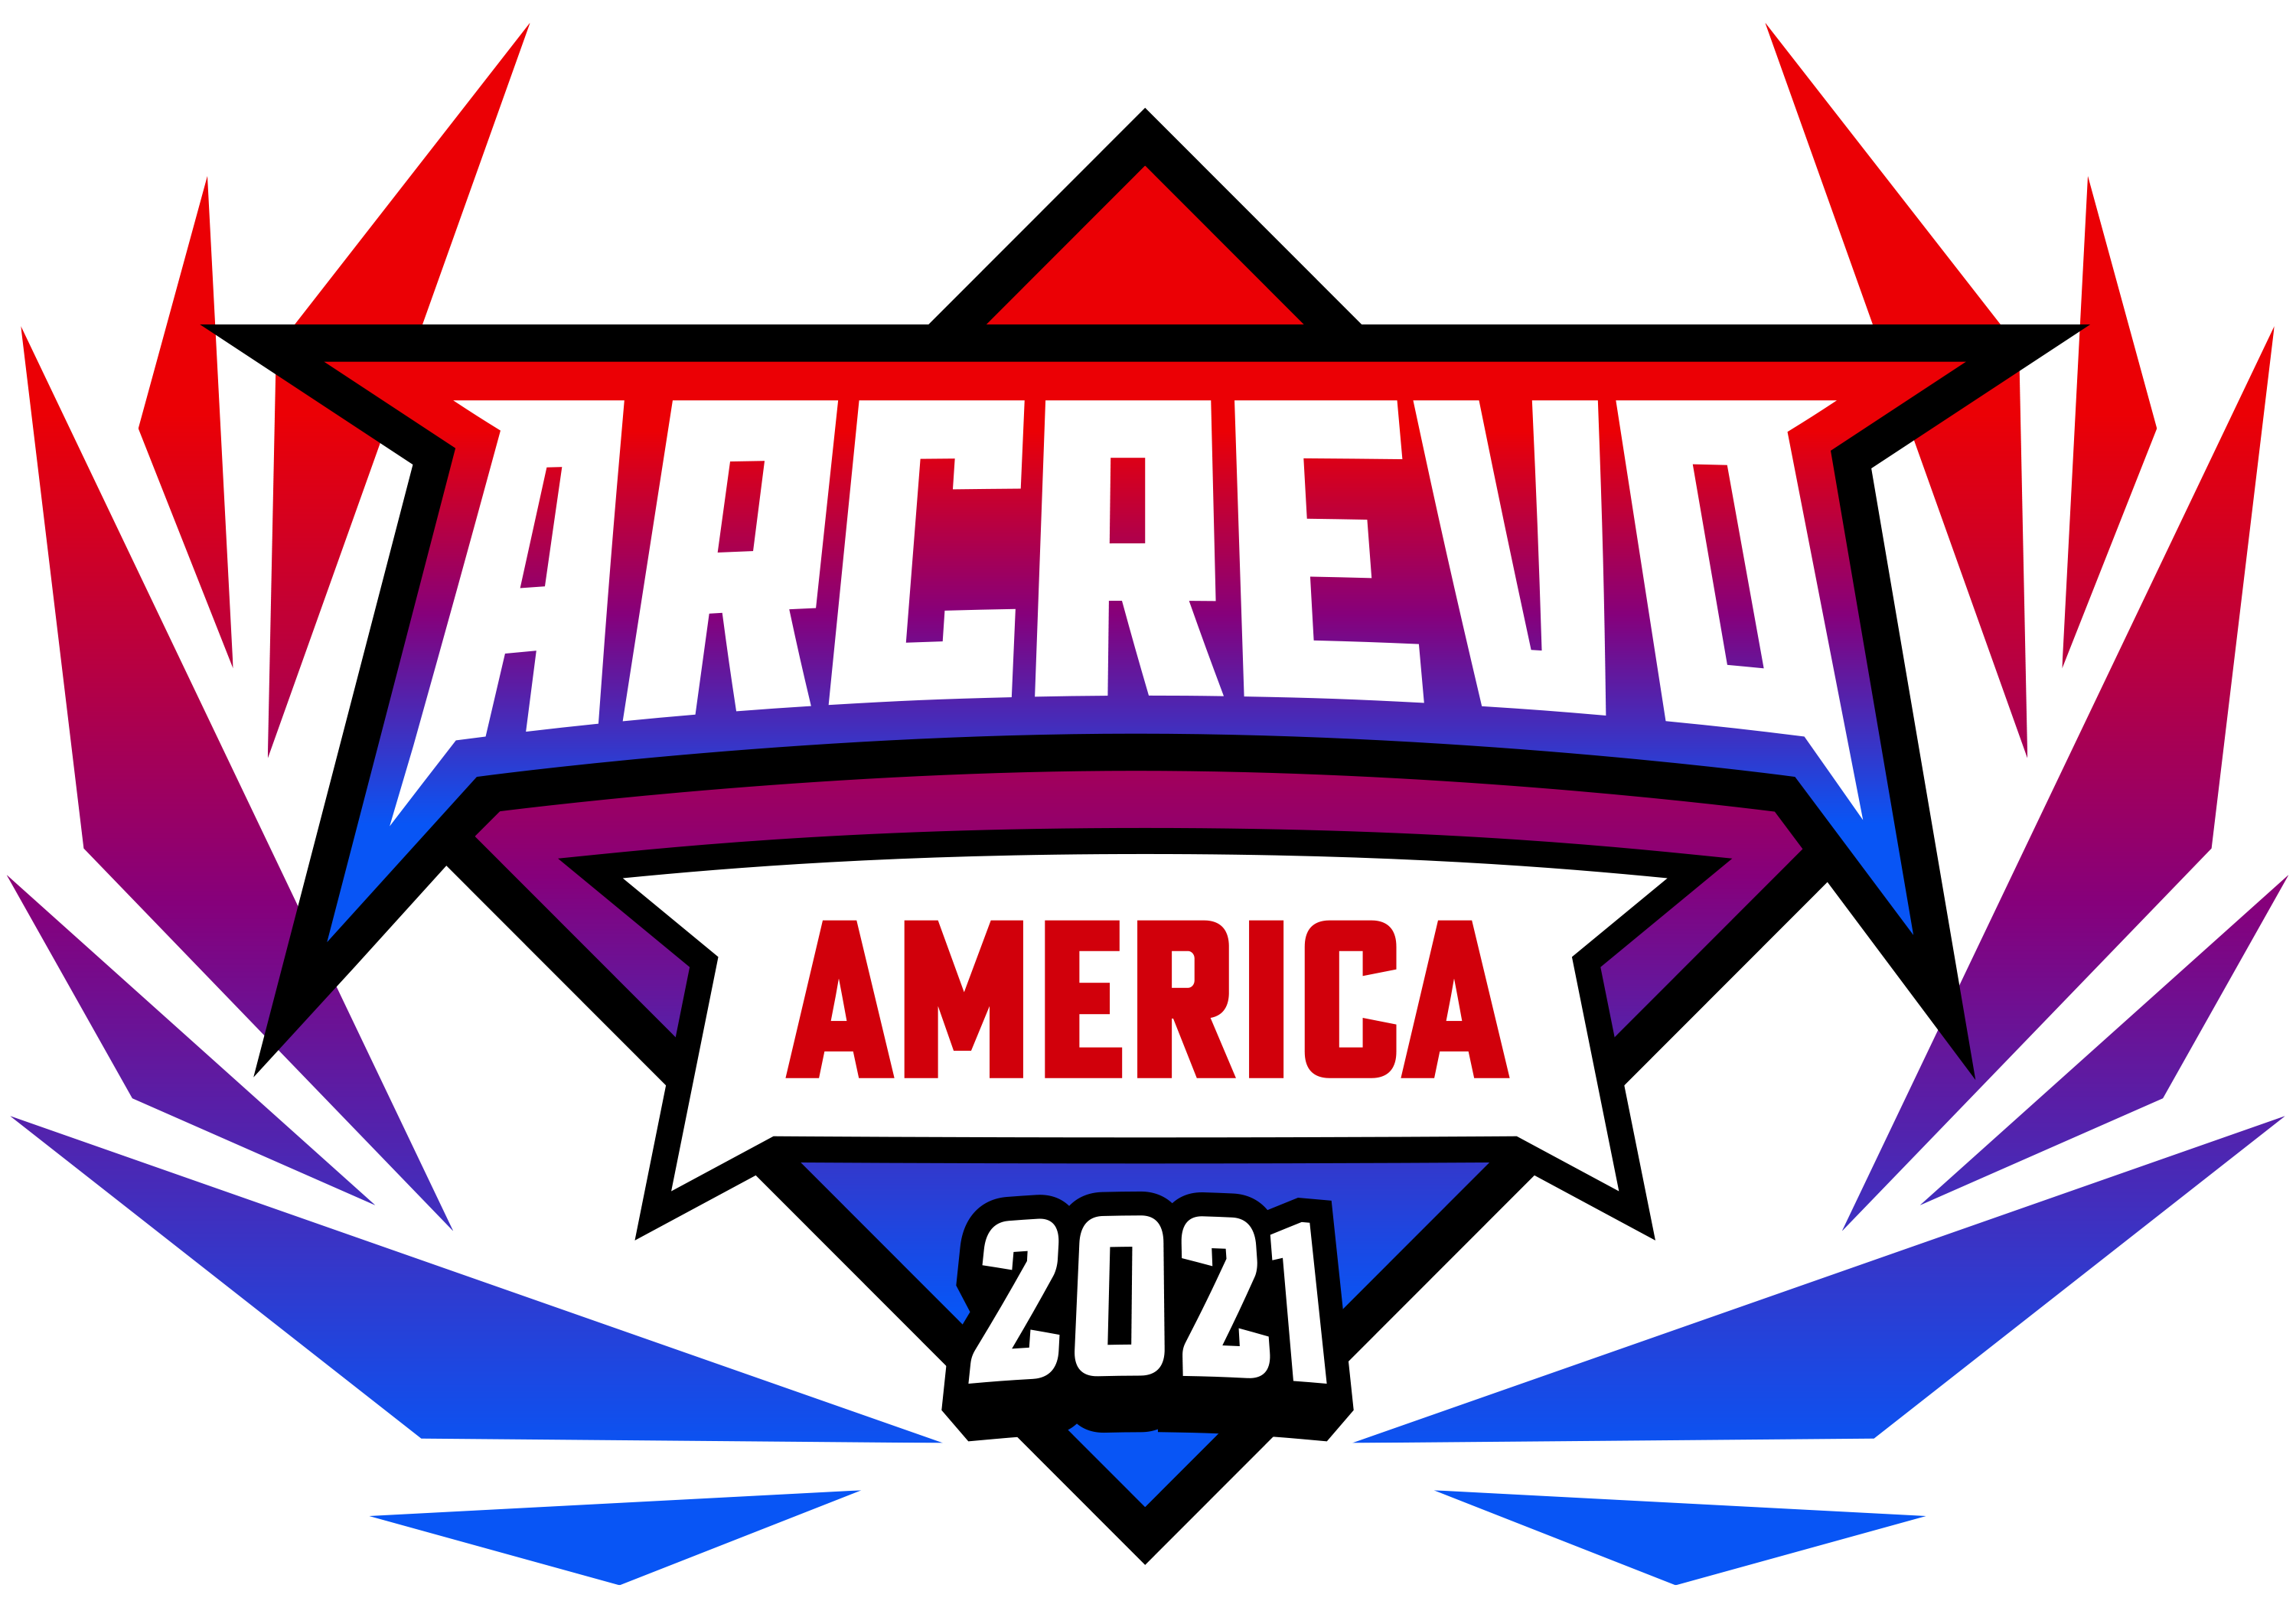 ARCREVO AMERICA 2021